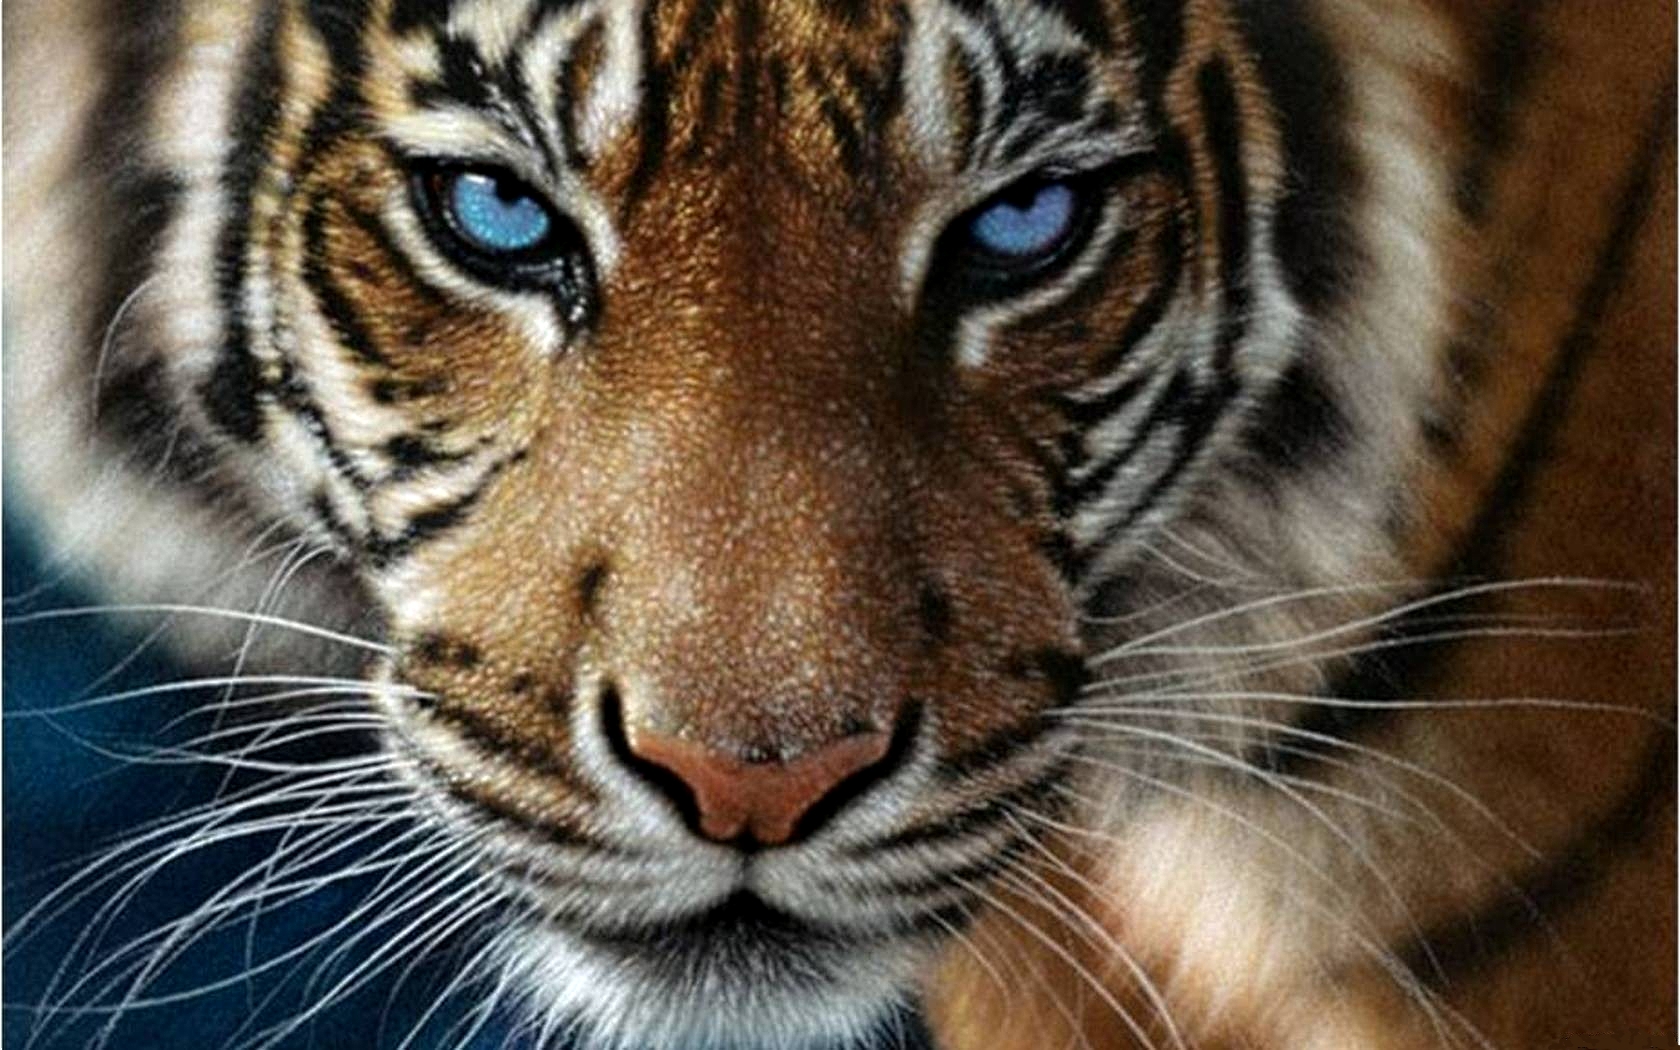 blauer tiger tapete,tiger,tierwelt,landtier,bengalischer tiger,schnurrhaare